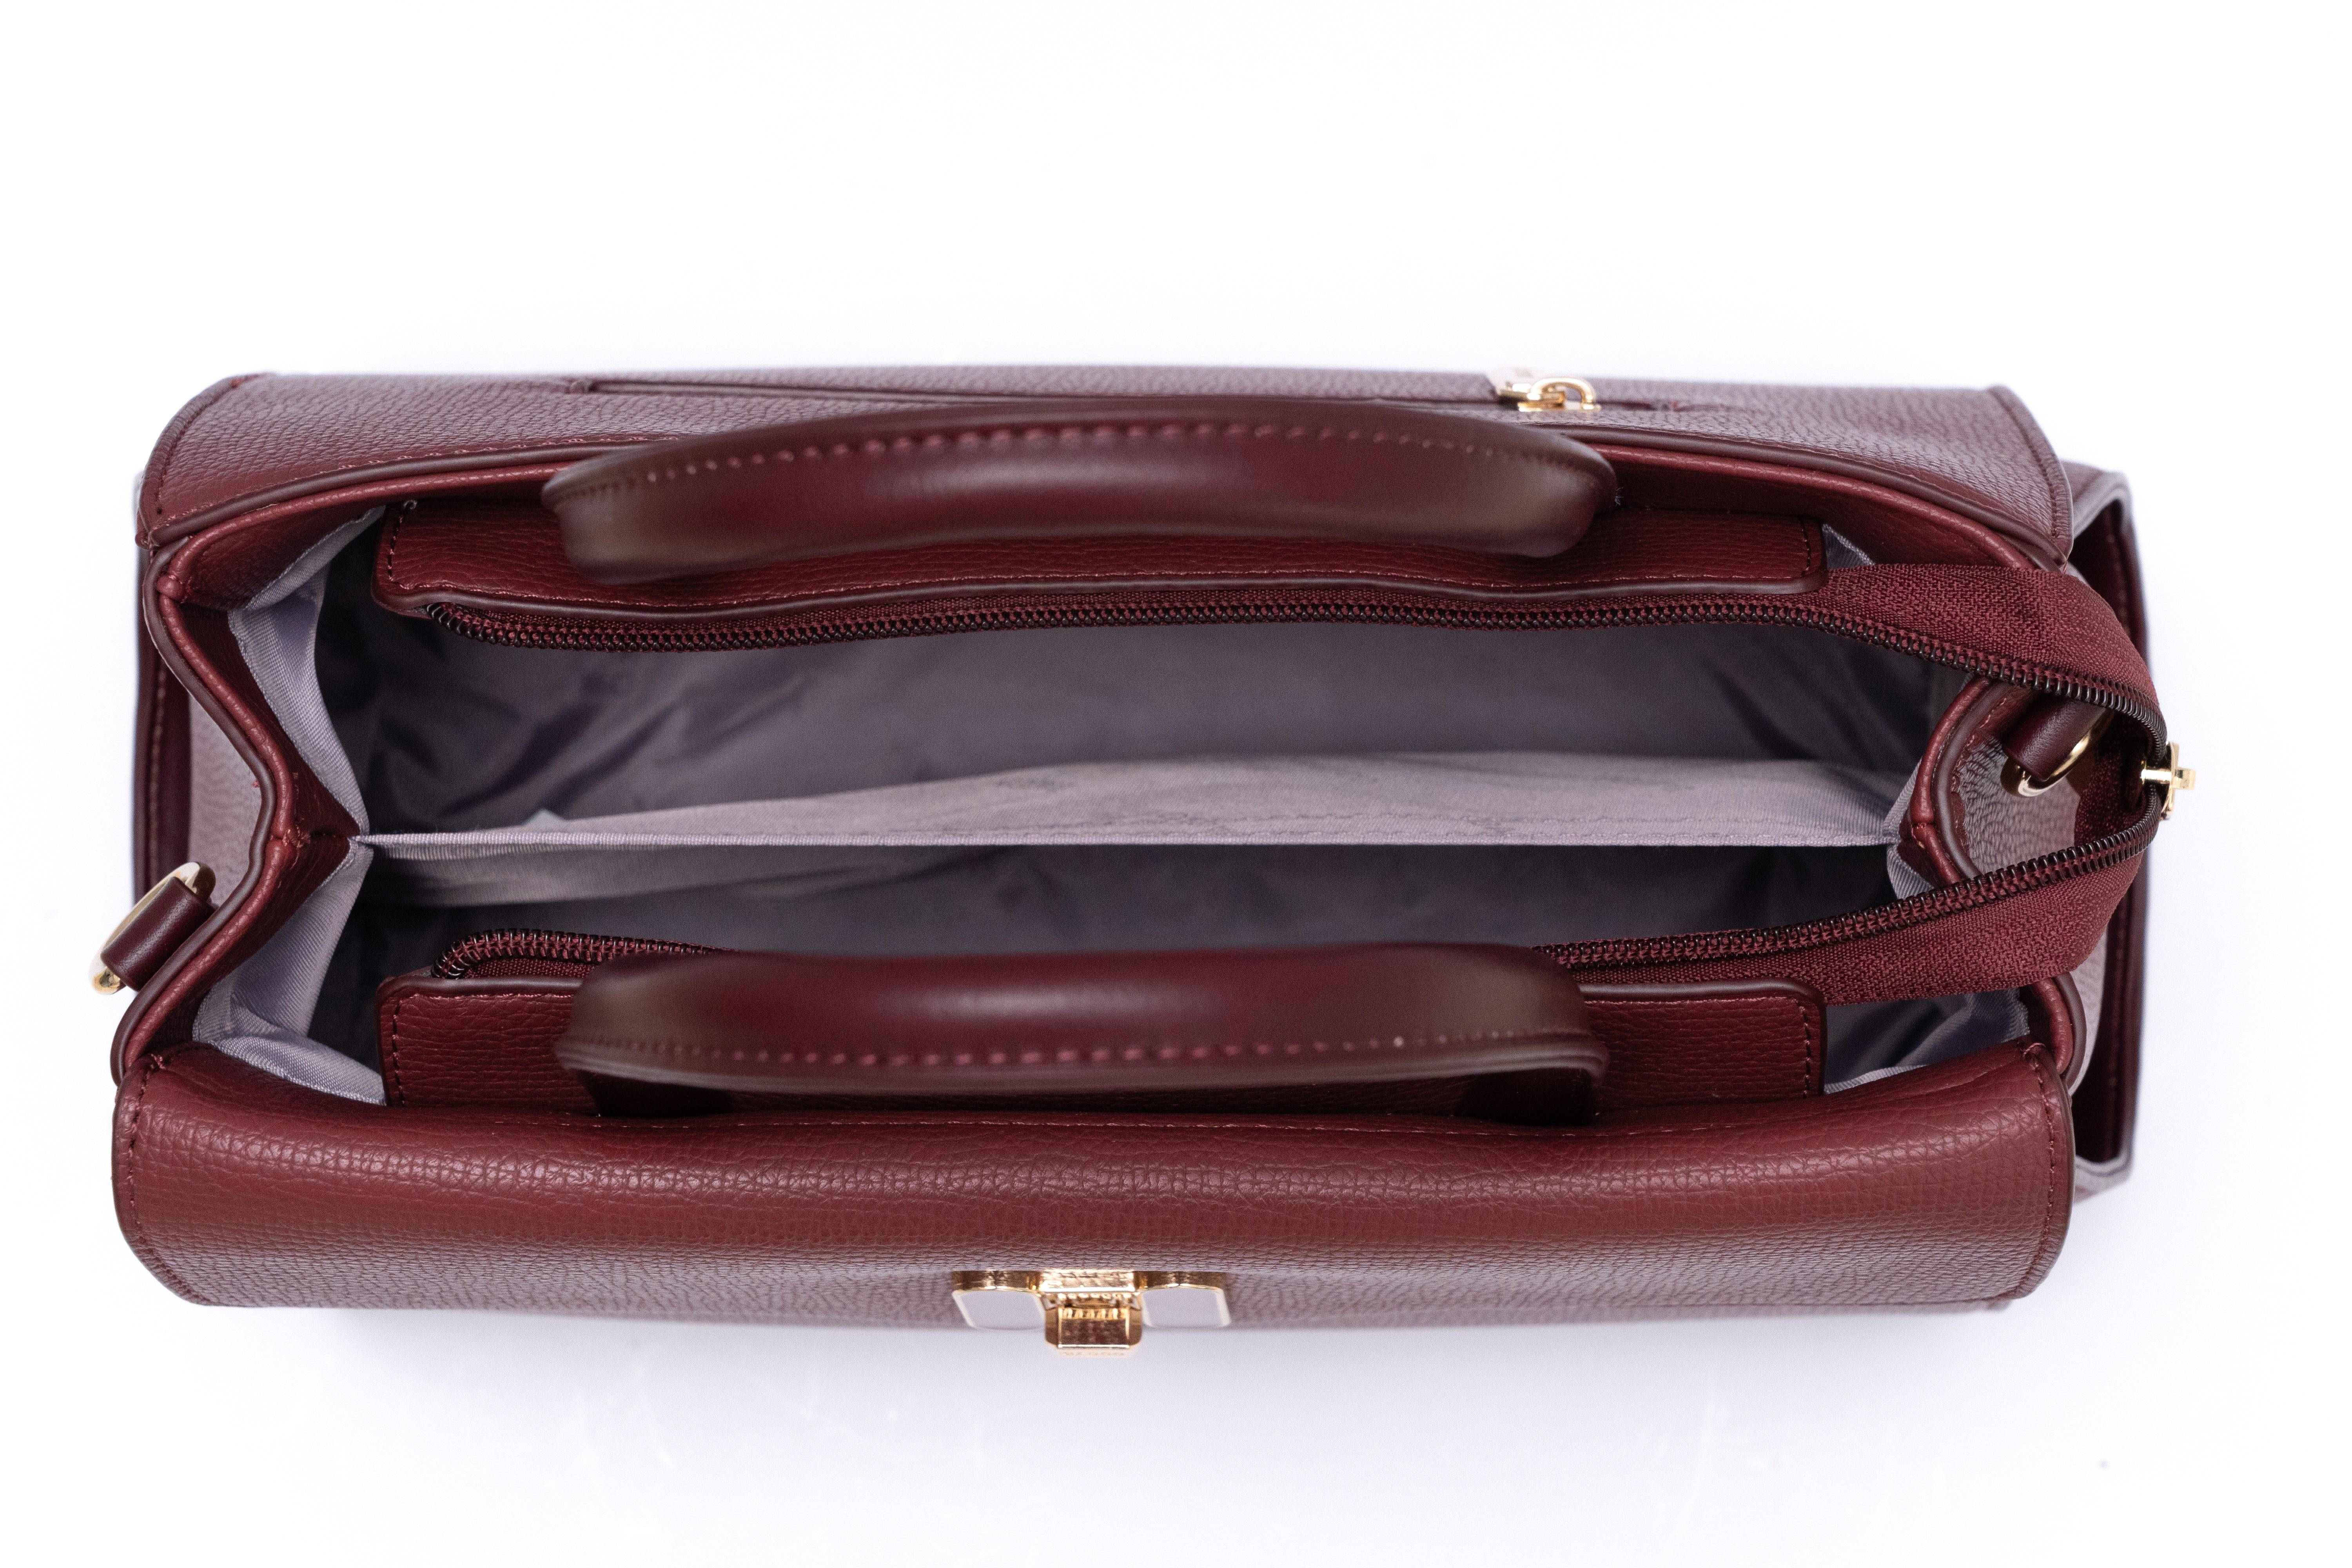 حقيبة يد نسائية متوسطة الحجم باللون الاسود - KSA